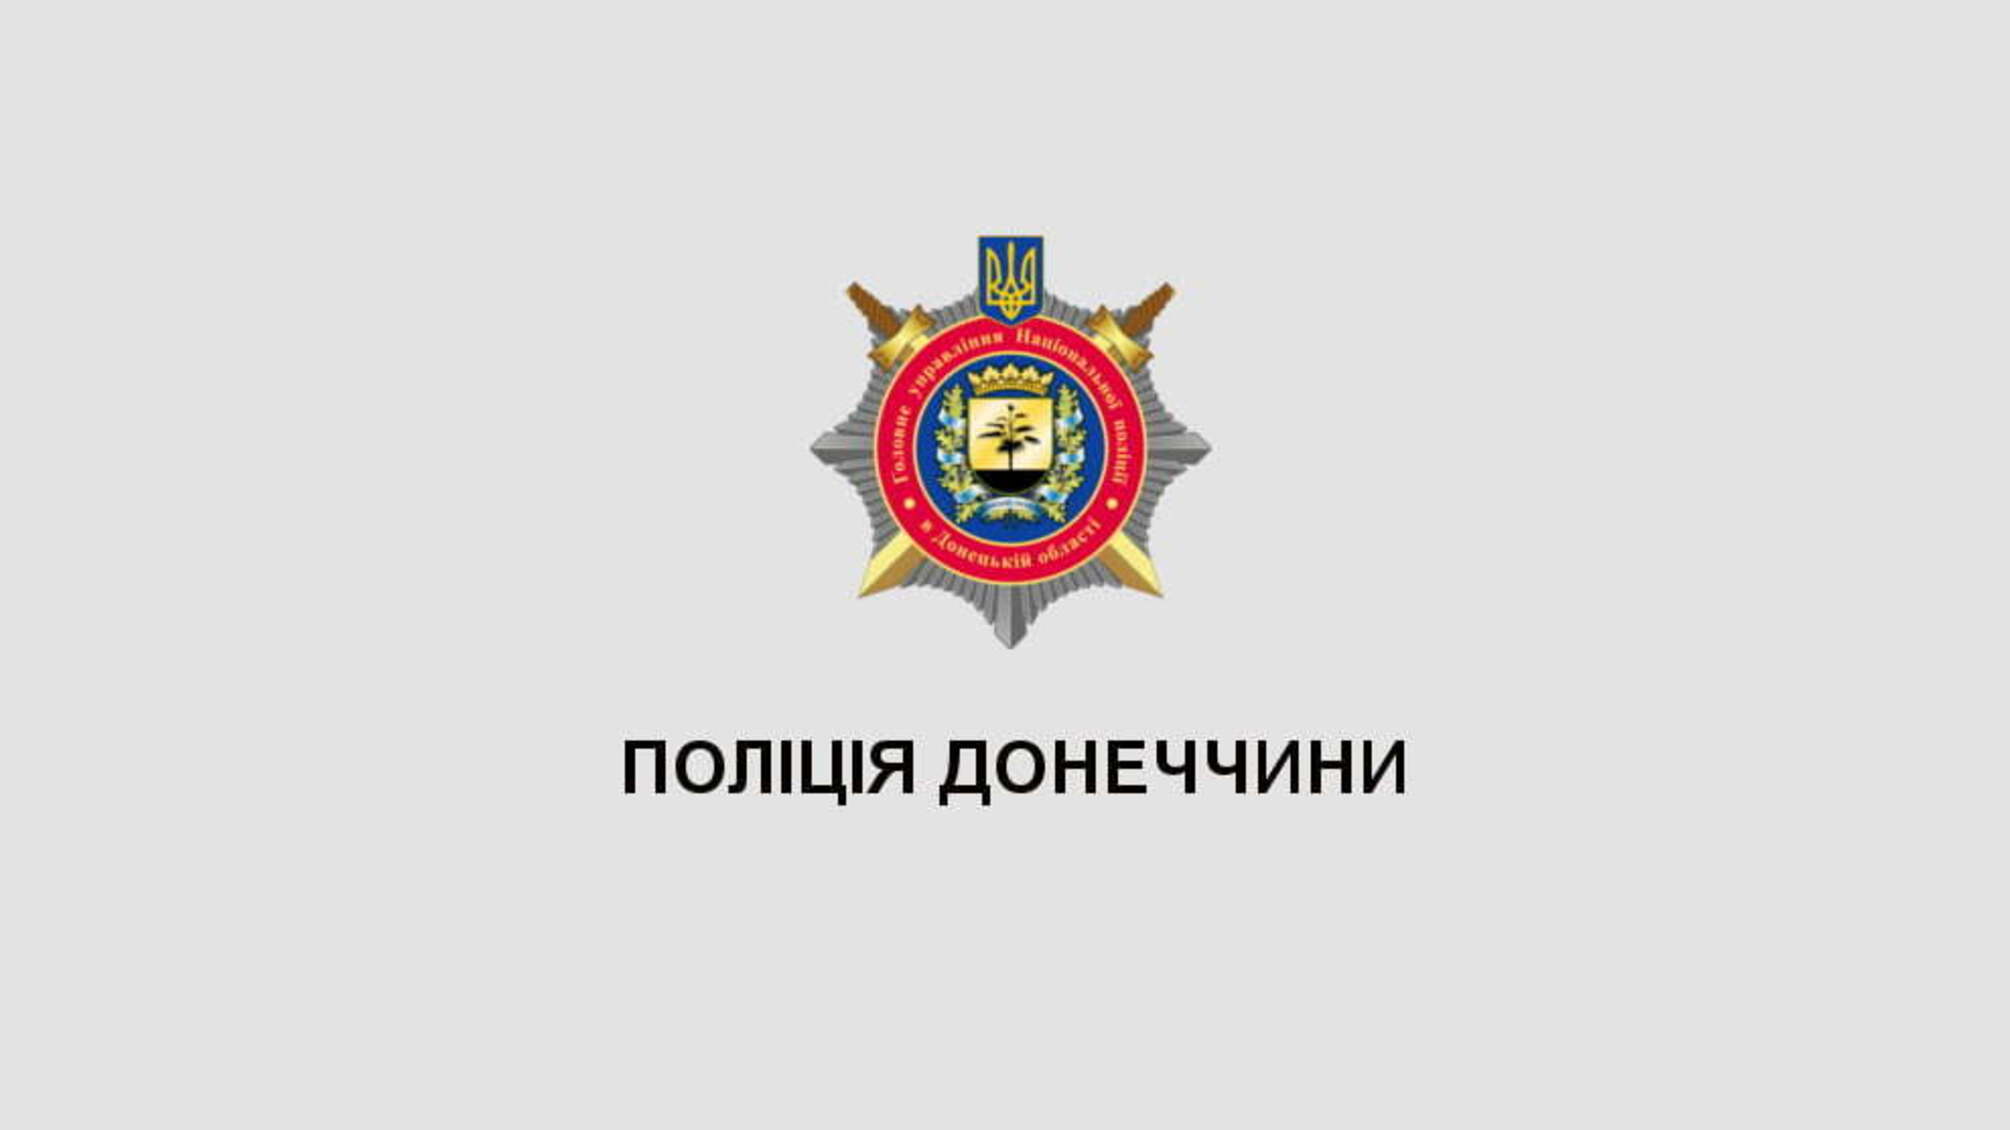 На Донеччині поліція та школа олімпійського резерву об’єднали зусилля для профілактики злочинності і популяризації спорту